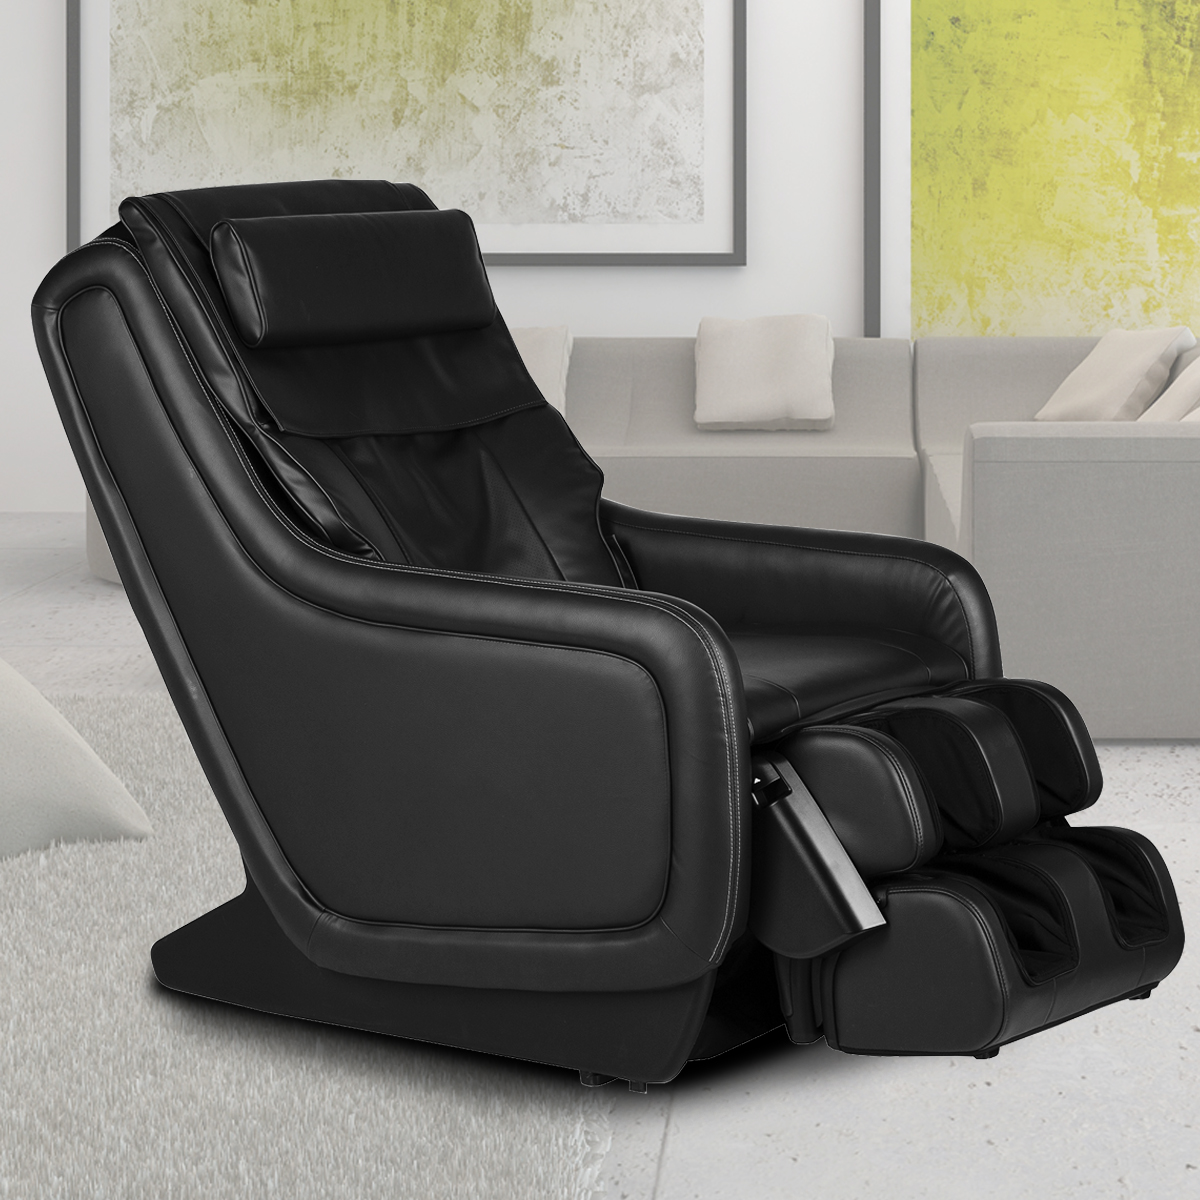 ZeroG 5.0 Massage Chair